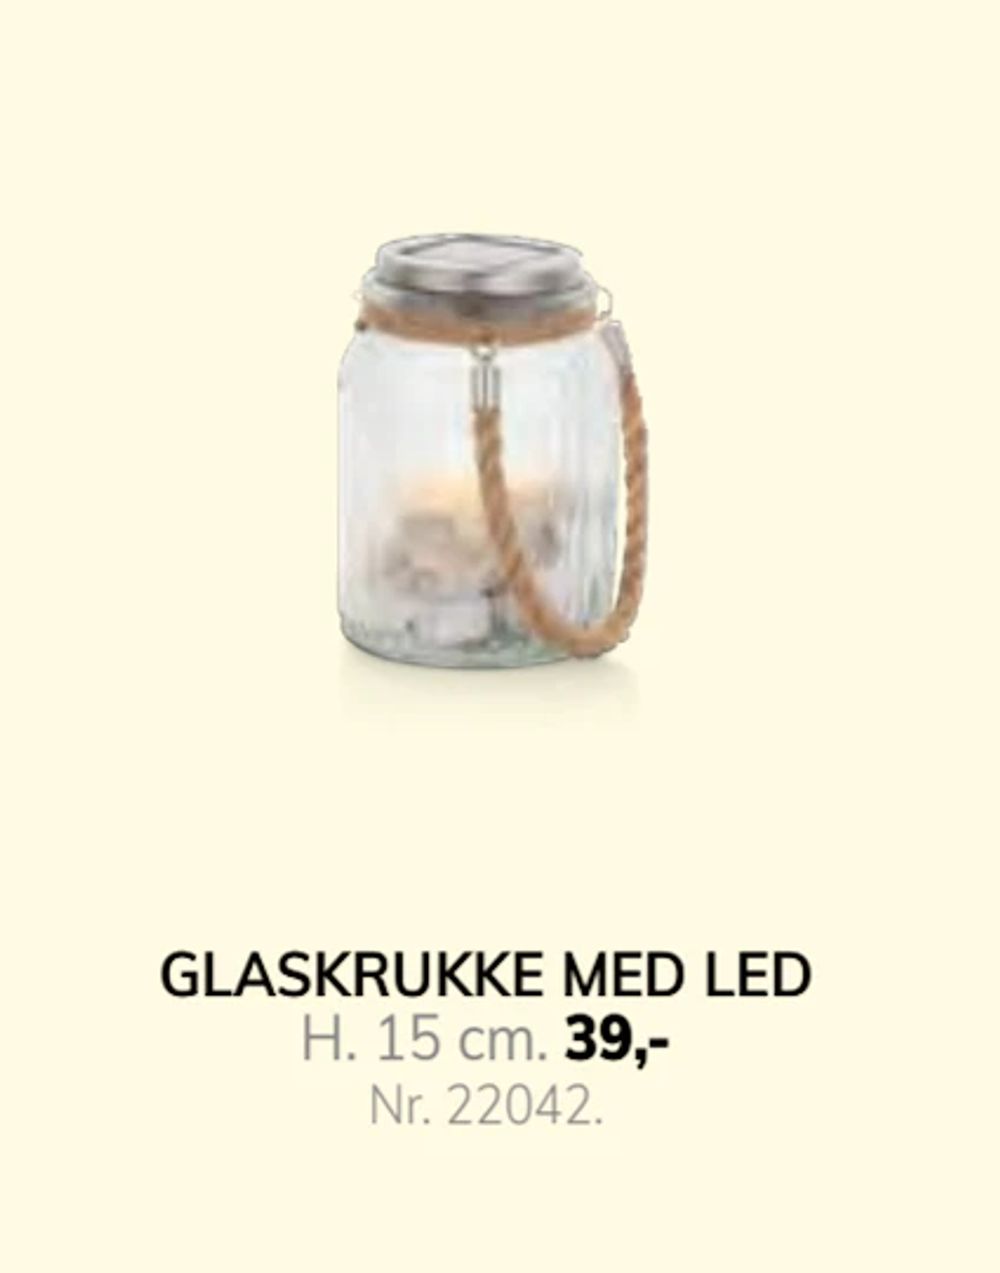 Tilbud på GLASKRUKKE MED LED fra Daells Bolighus til 39 kr.